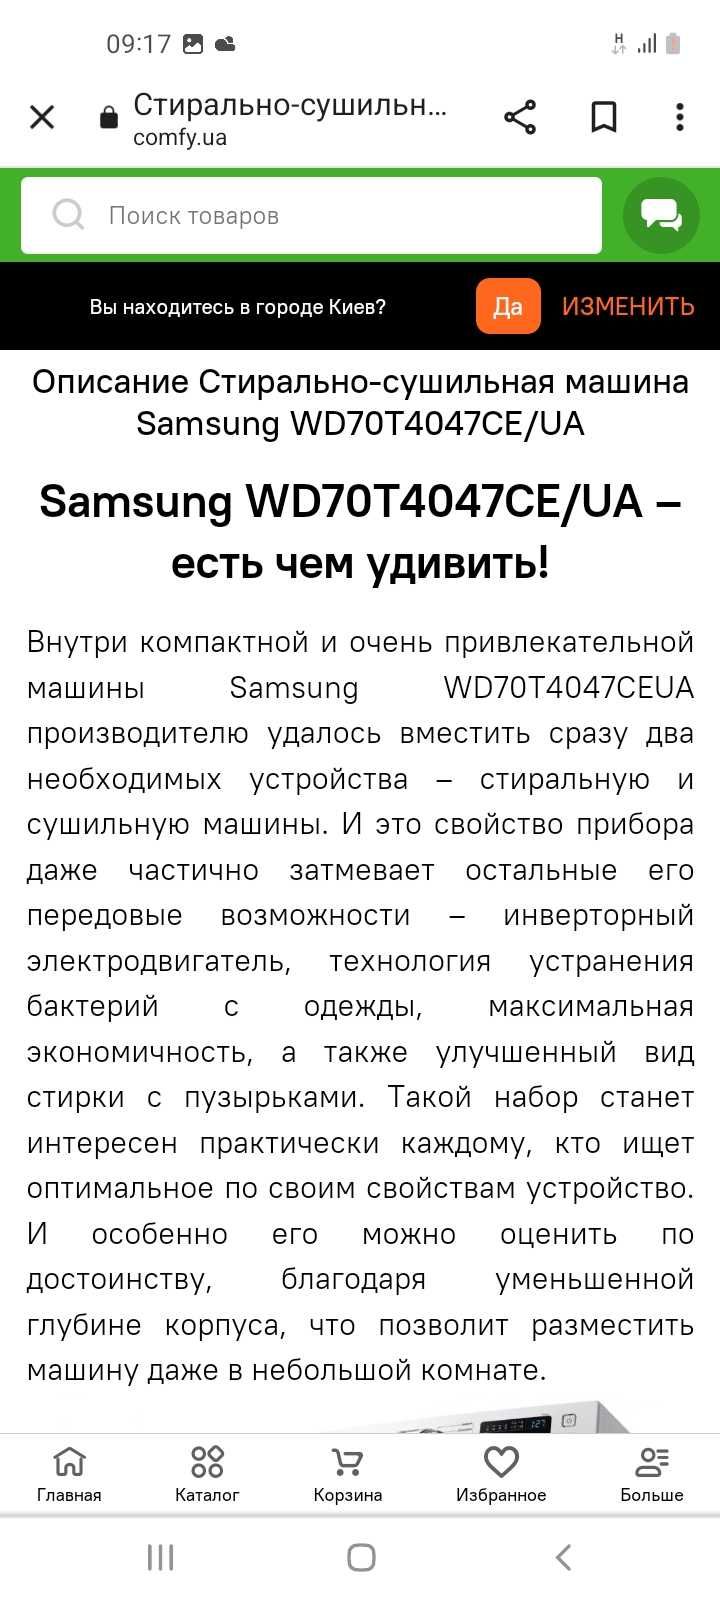 Samsung wd70t4047ce/ua